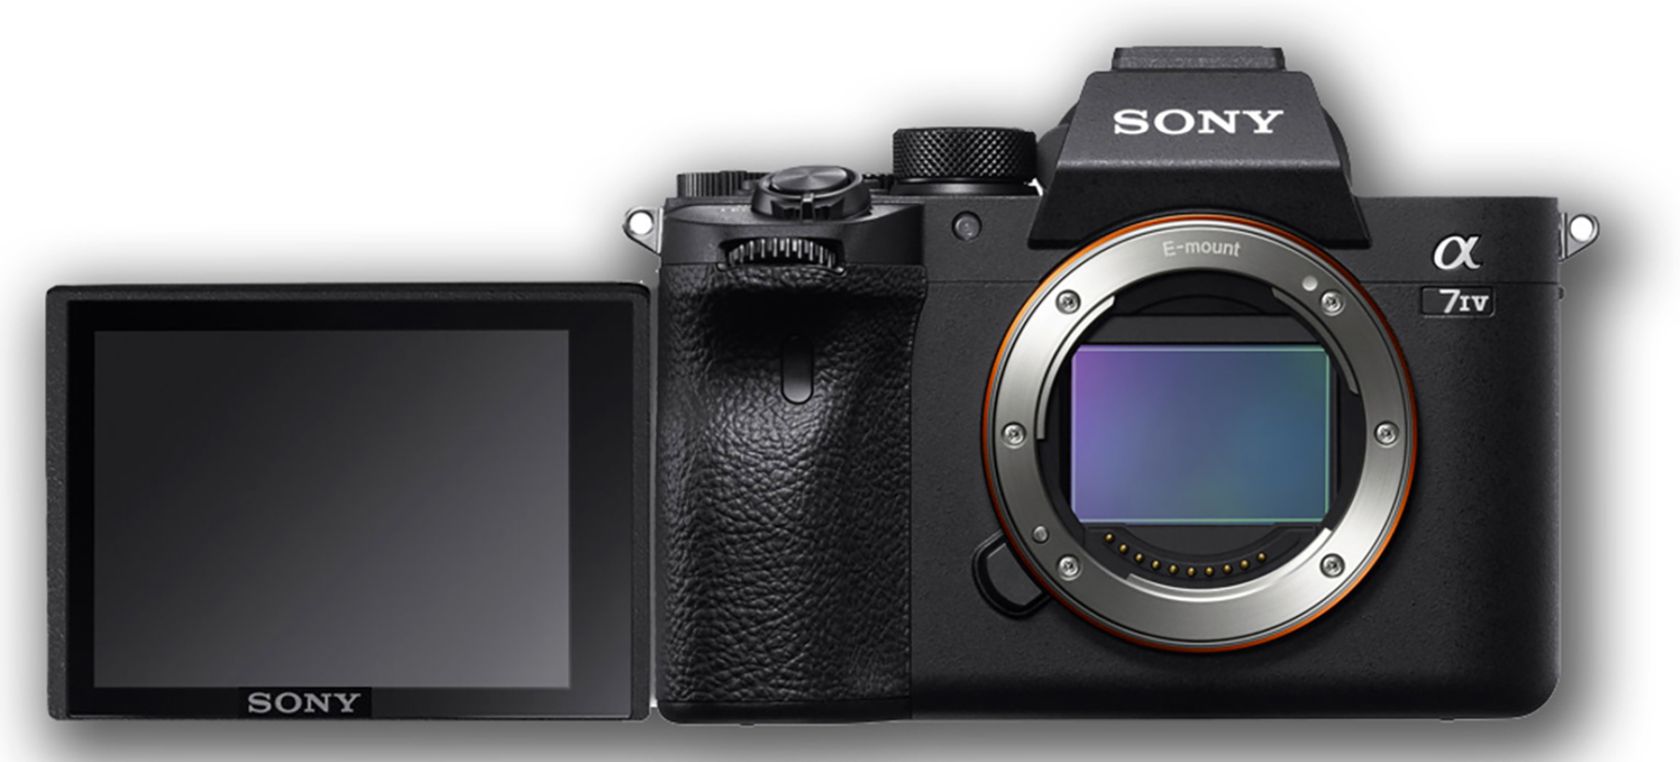 ¿Qué sabemos y qué esperamos de la nueva cámara super-ventas de Sony?